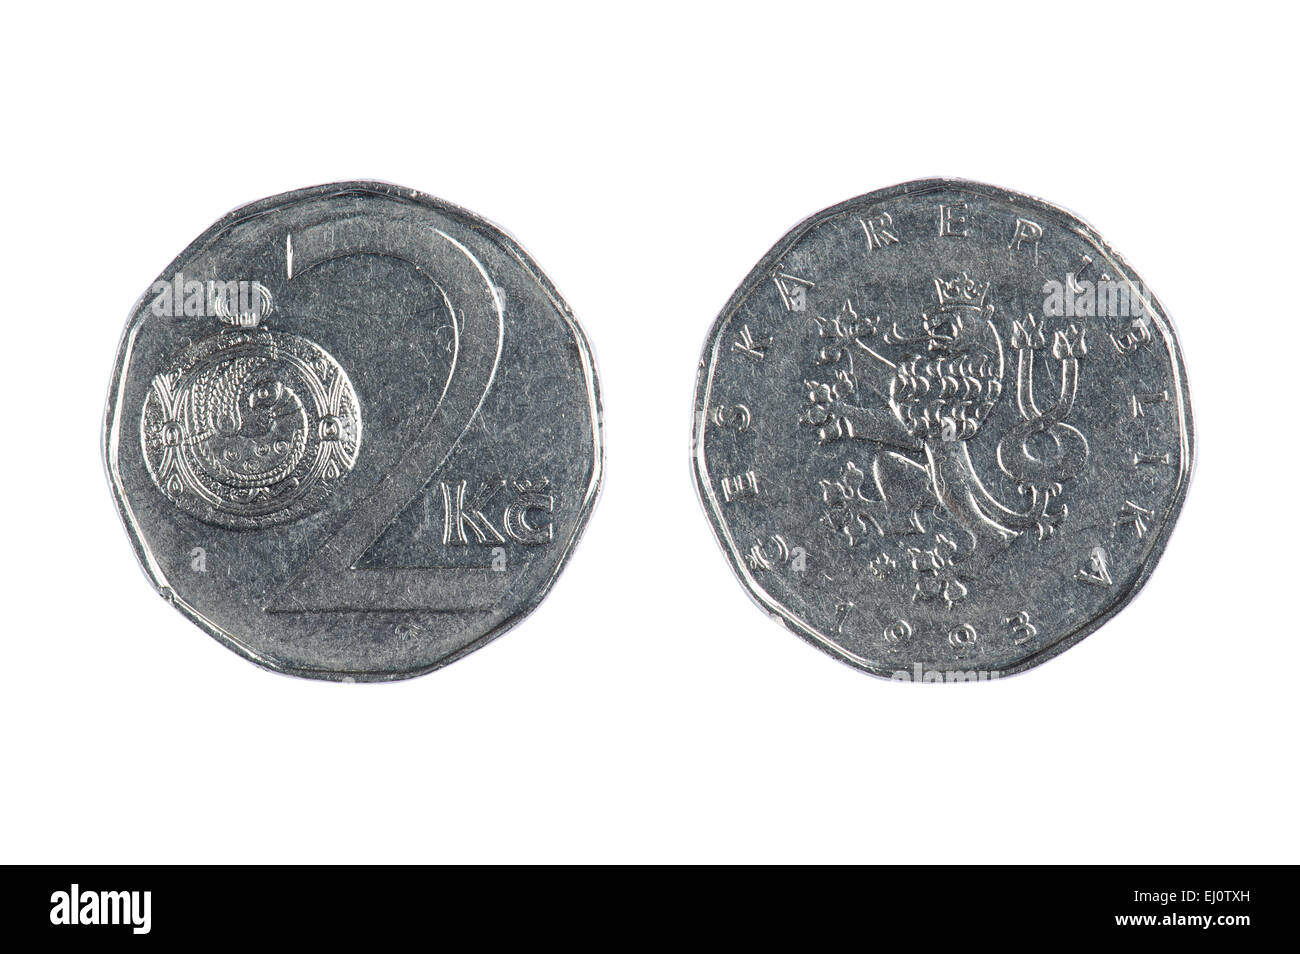 isoliertes Objekt auf weiß - Tschechische Münze Stockfoto